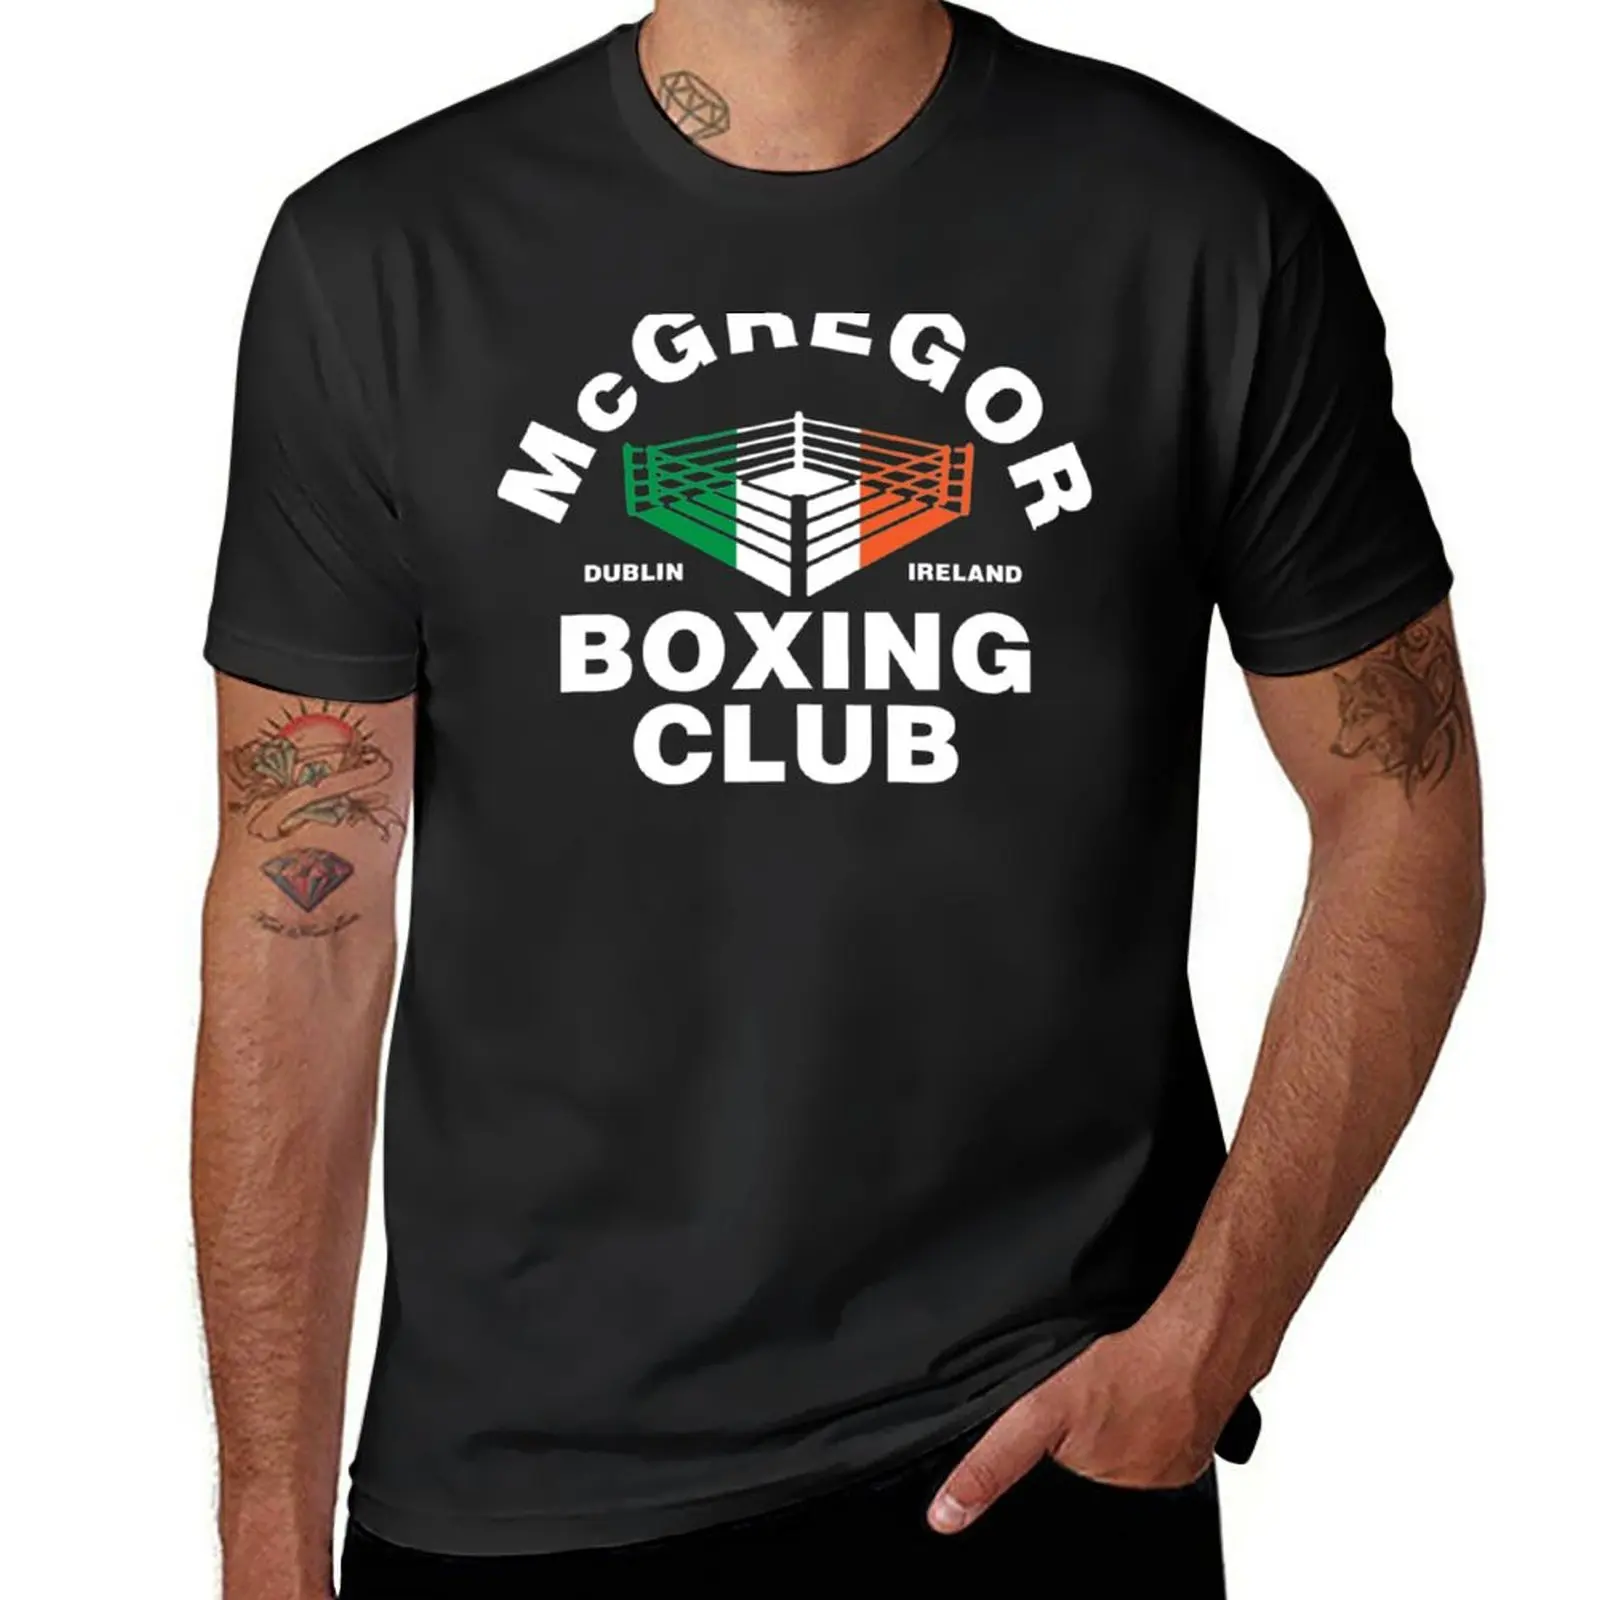 

Футболка McGregor для боксерского клуба (белая), тяжелые быстросохнущие мужские хлопковые футболки с графическим принтом